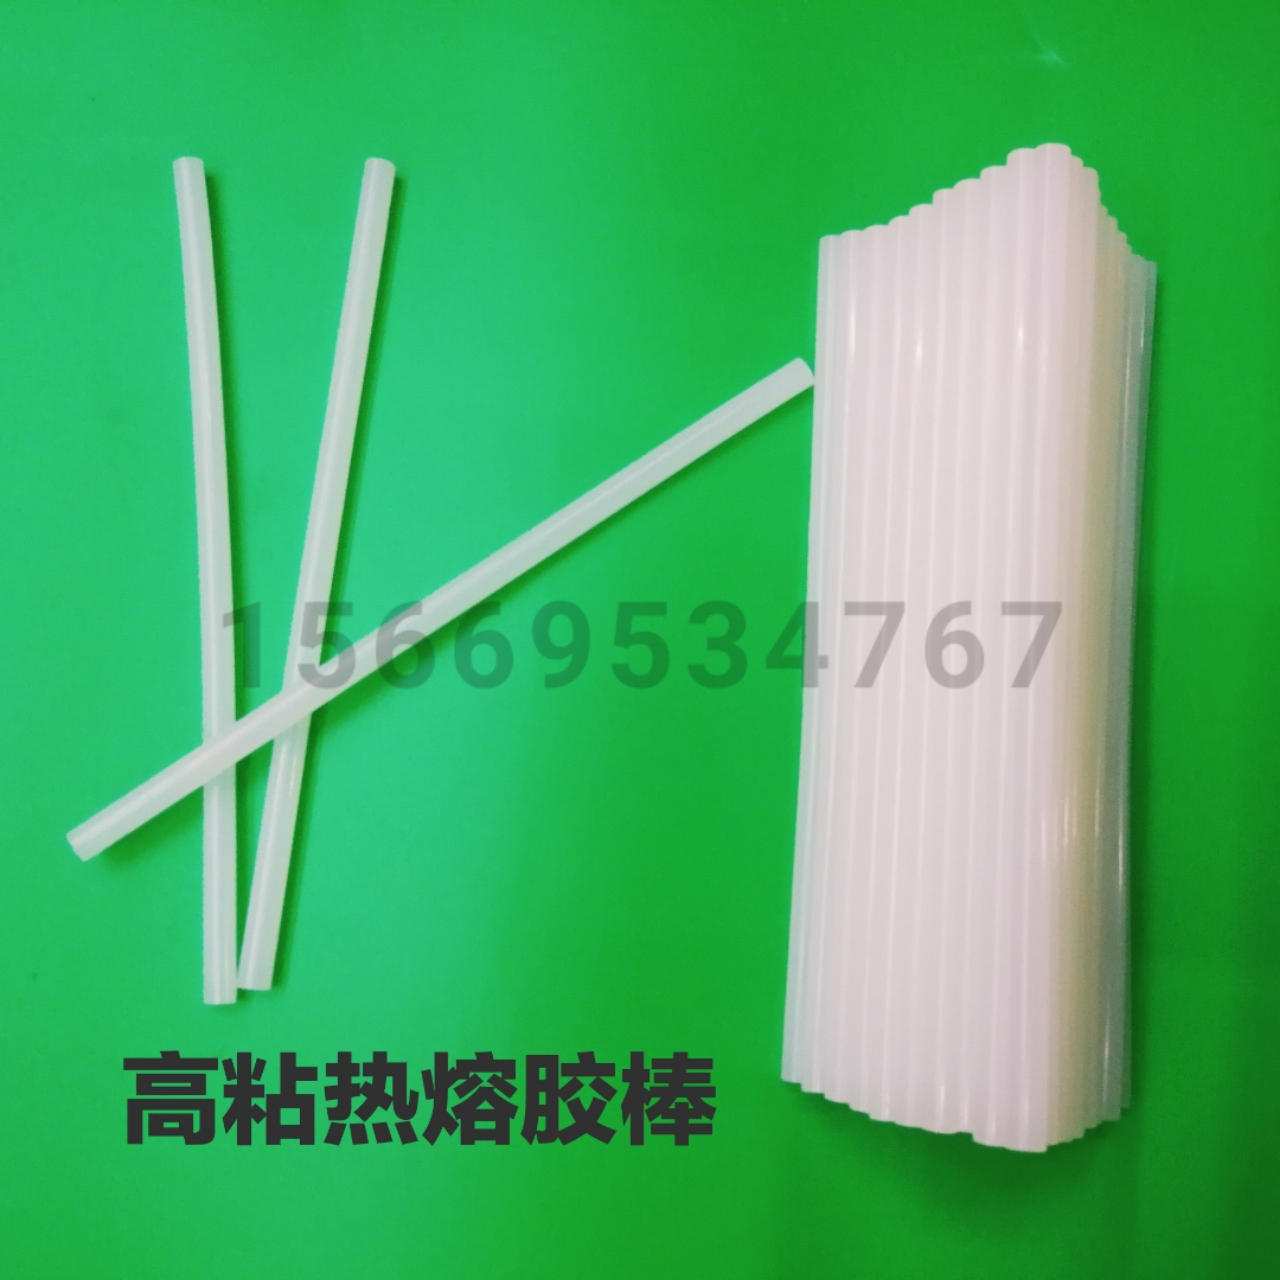 高品质乳白色热熔胶棒 透明热溶胶条 高粘性环保型